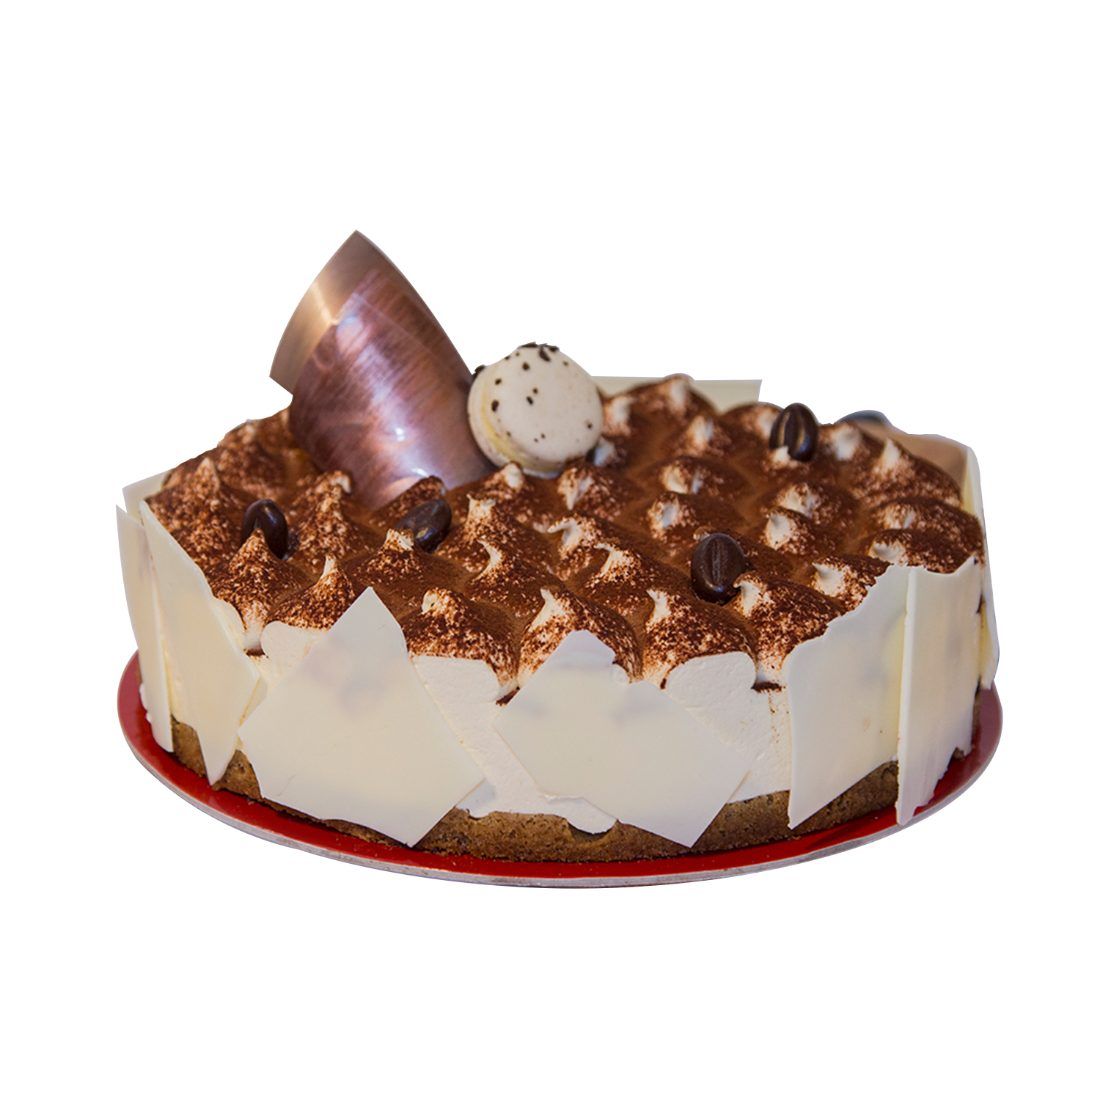 Tiramisu Layer Cake Recipe | King Arthur Baking